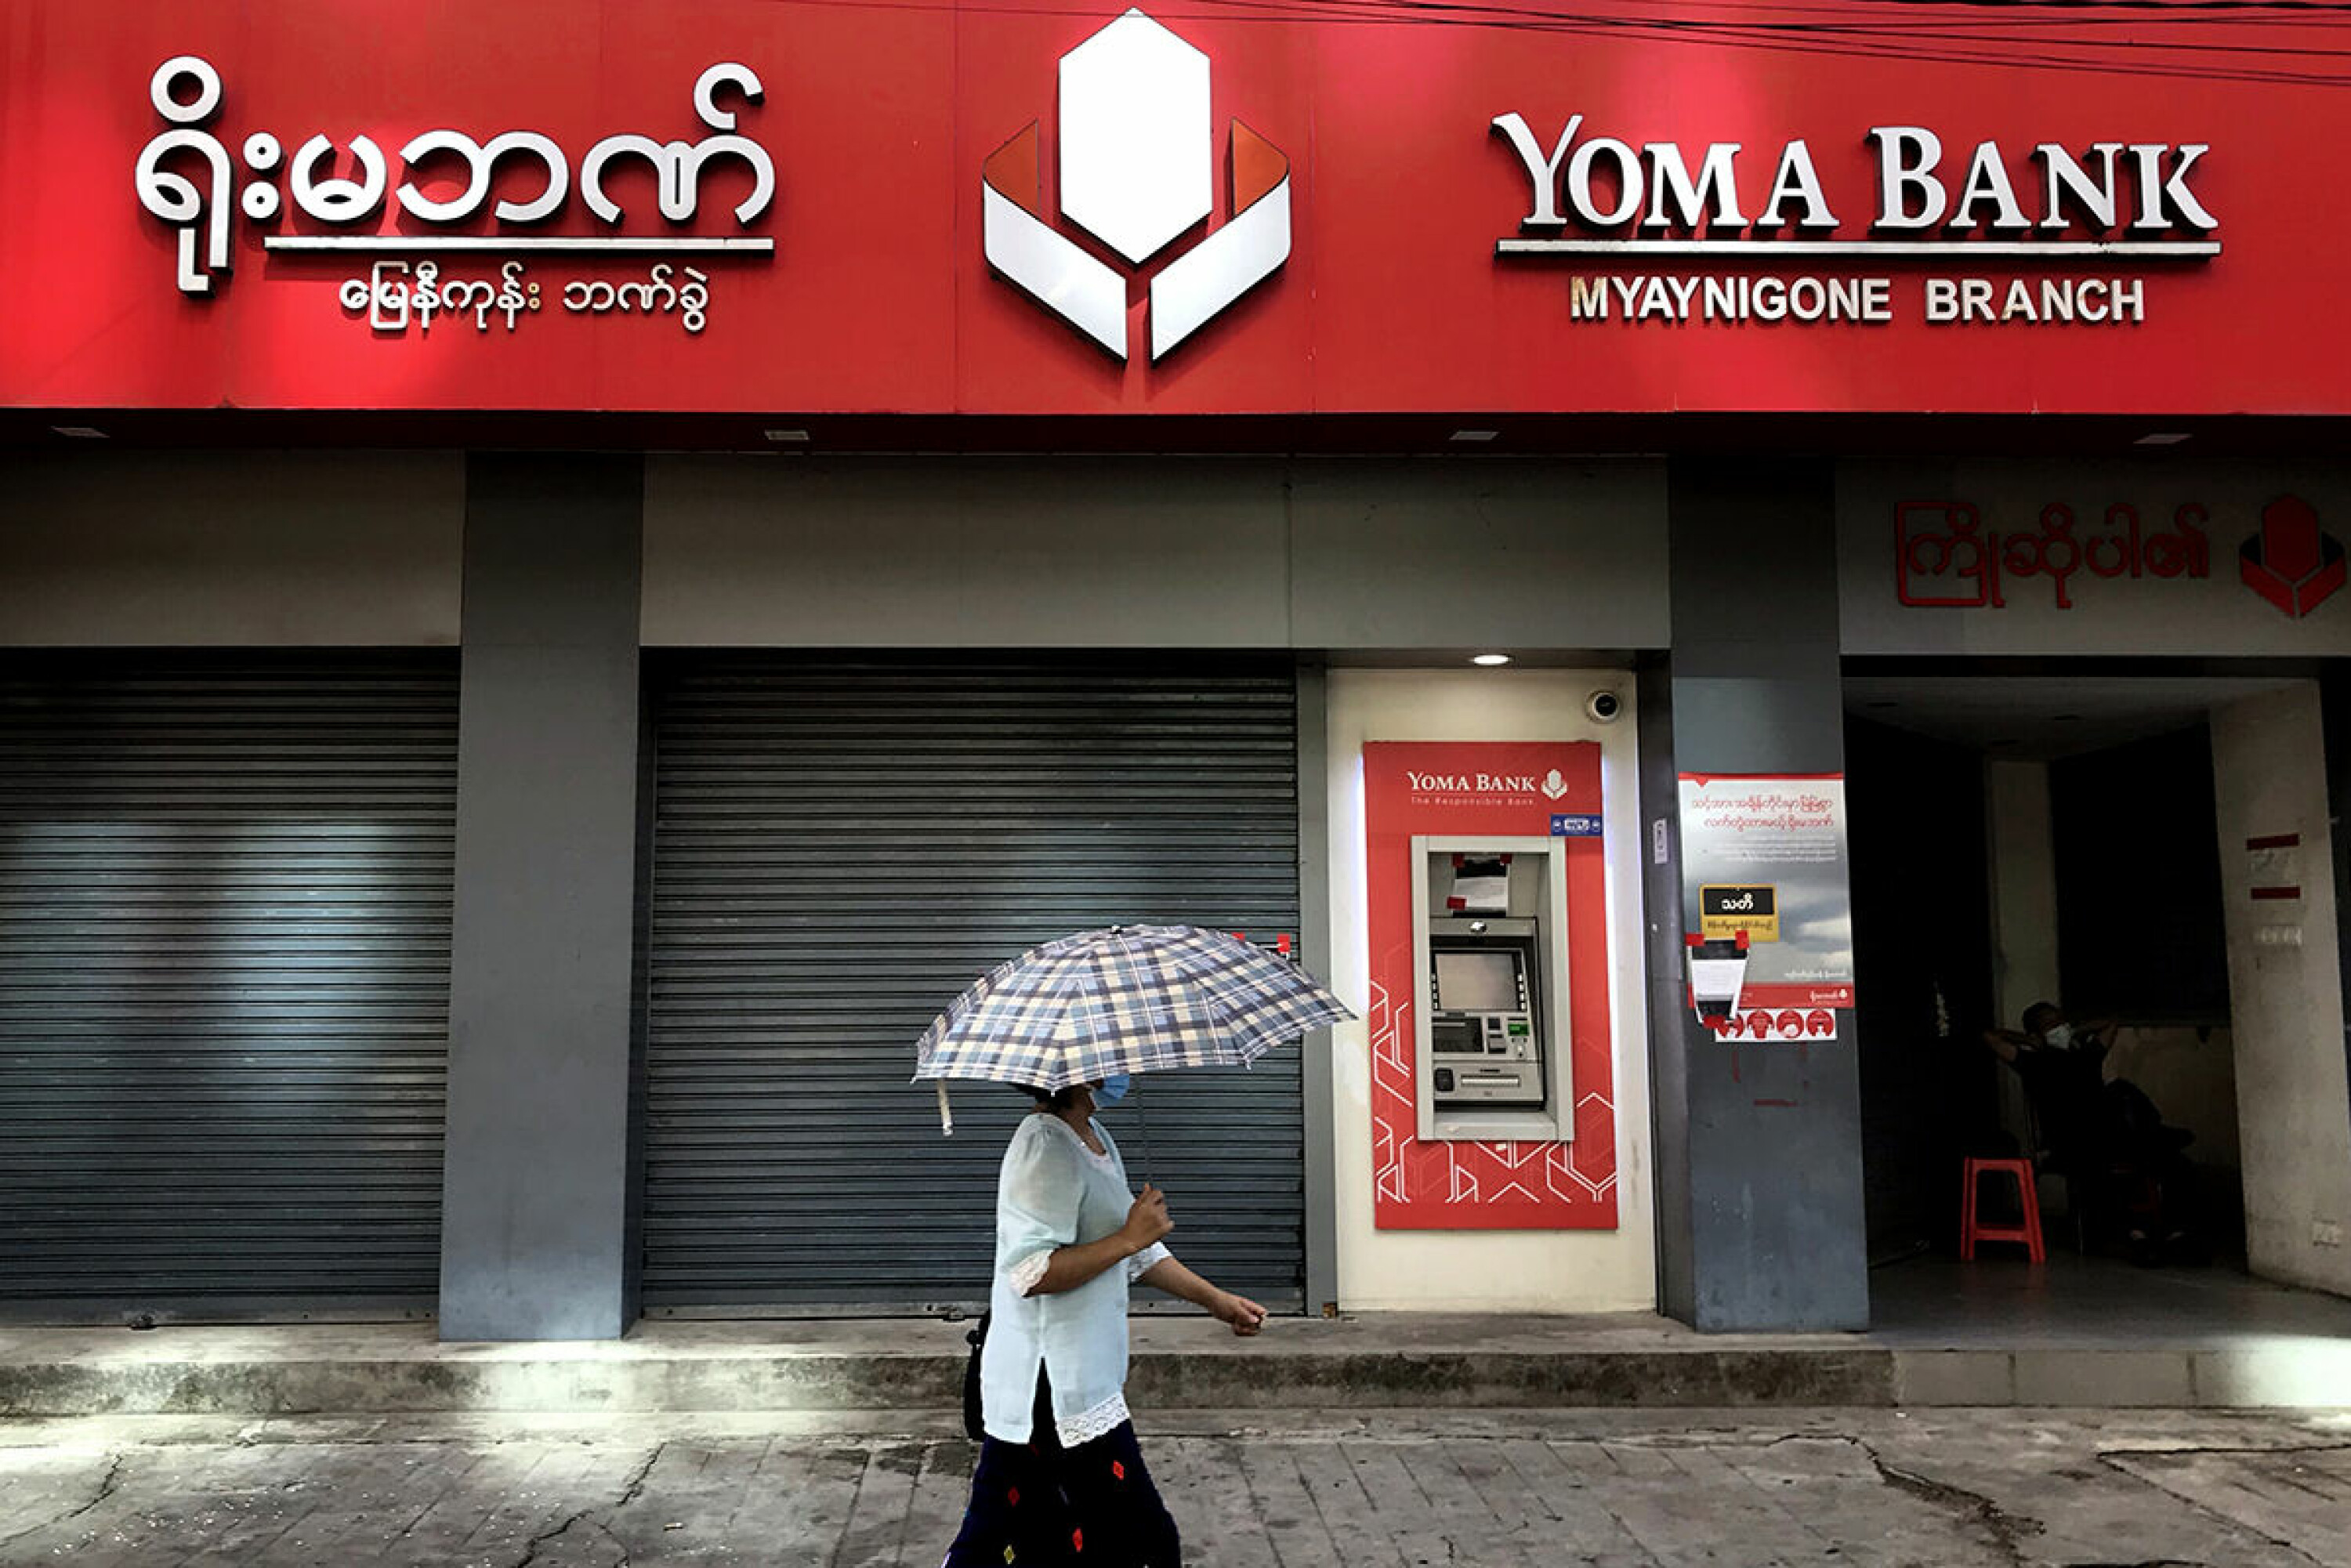 – Vi har gjort grundige aktsomhetsvurderinger, sier Ylva Lindberg om Norfunds eierforhold i Yoma Bank i Myanmar. Etter kuppet har det vært masseprotester mot juntaen, men det var stille utenfor forretningsbankens filial i bydelen Myaynigone i Yangon da Bistandsaktuelt var der denne uka.